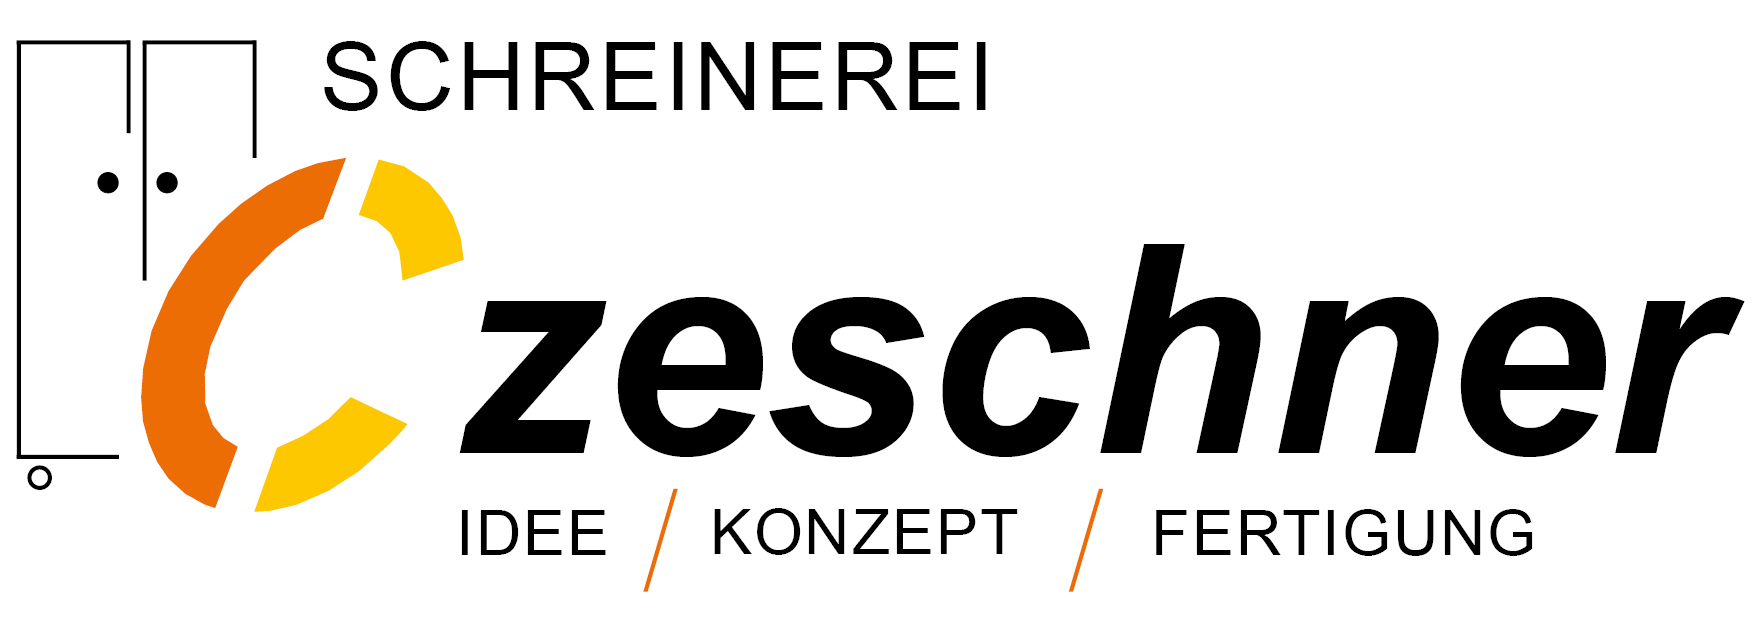 Schreinerei Czeschner GmbH & Co. KG